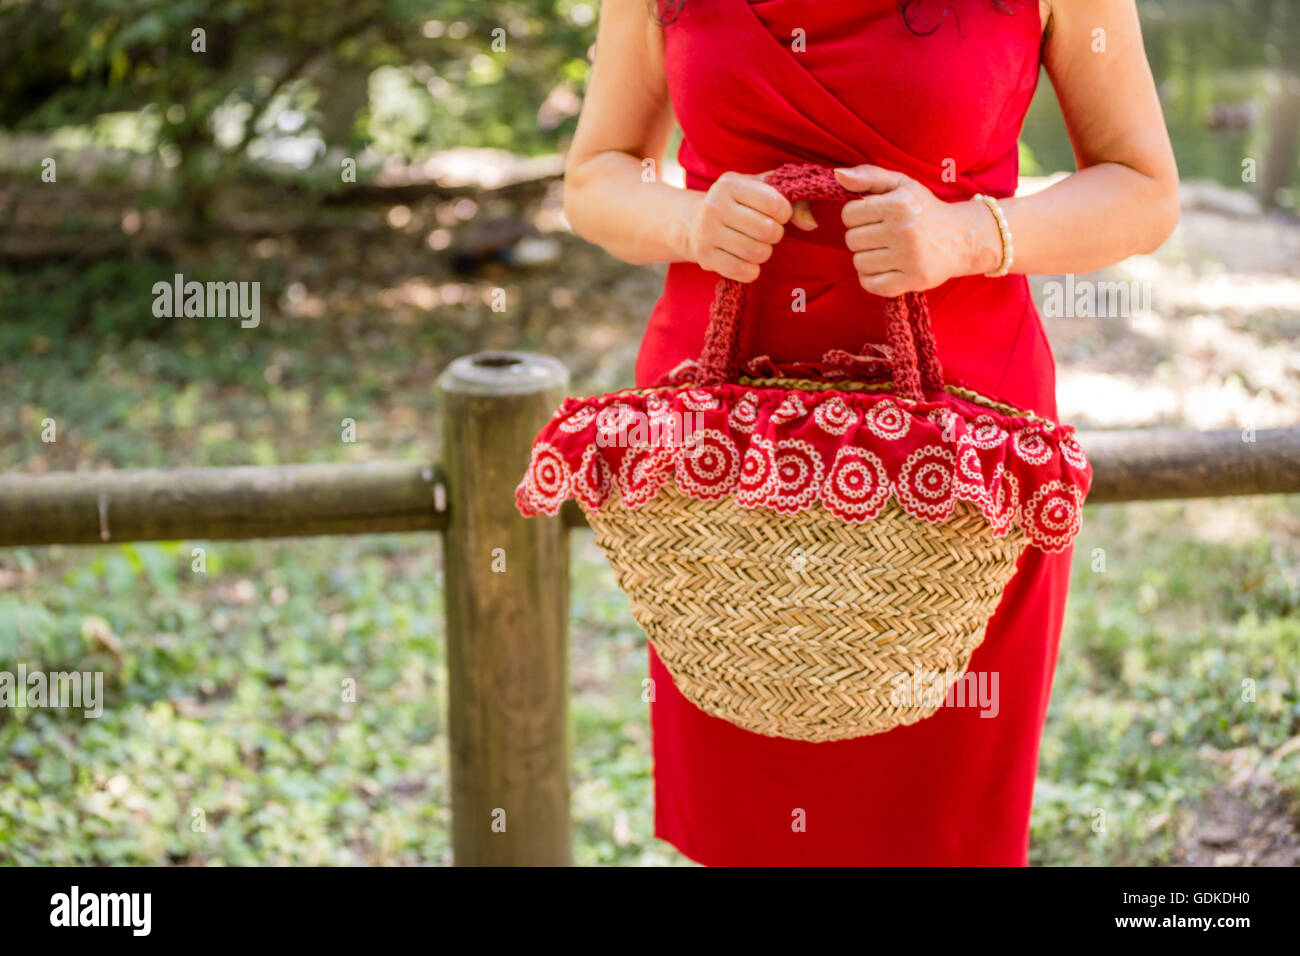 weibliche Hände halten eine Tasche im Landhausstil hergestellt aus Bast und rotes Tuch mit weißen Blüten, wartet die Frau, gekleidet in einen roten Etuikleid nervös in einem park Stockfoto